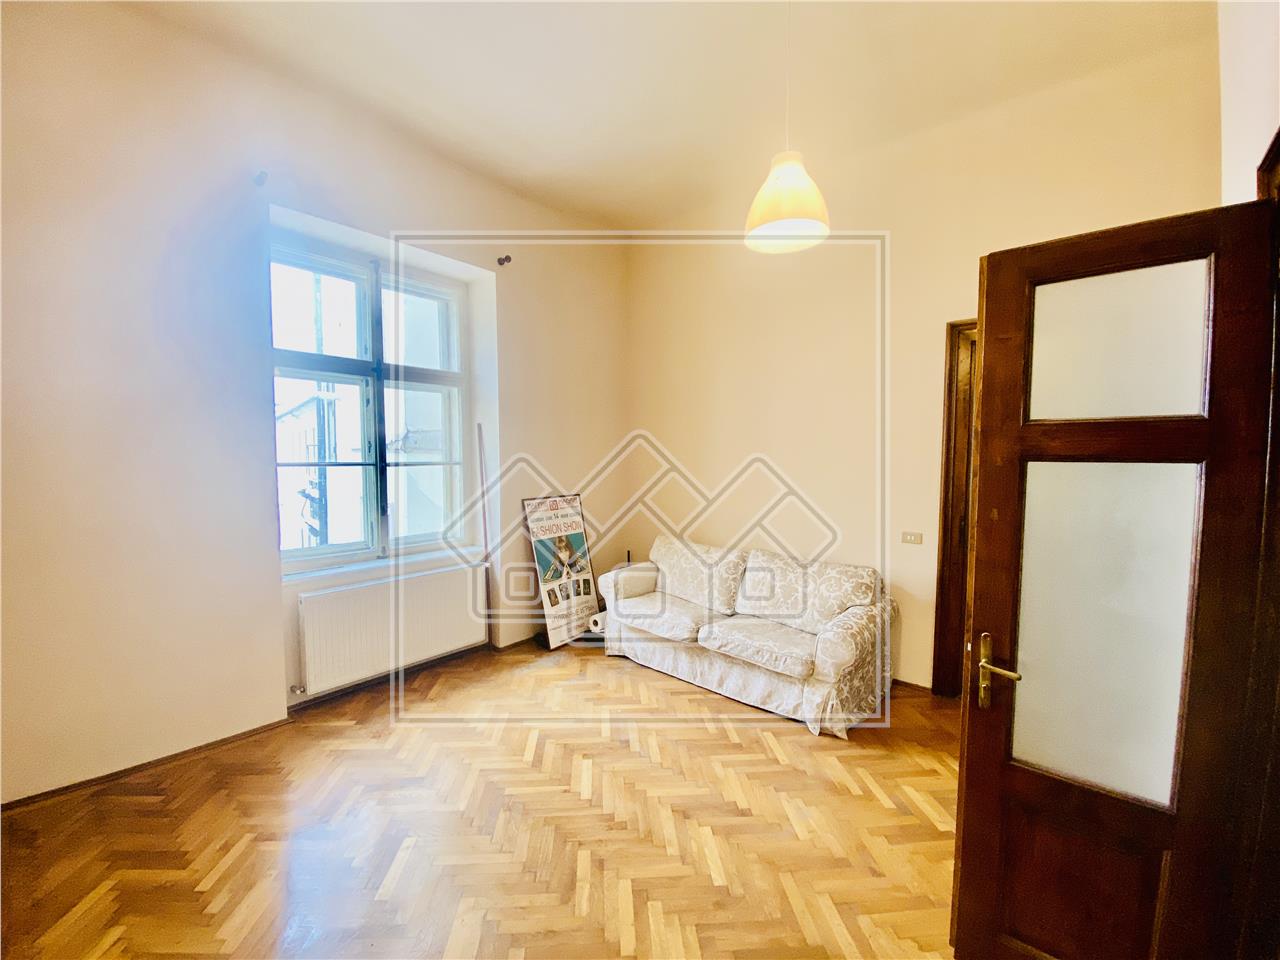 Wohnung zum Verkauf in Sibiu - 3 Zimmer - ULTRACENTRAL Position